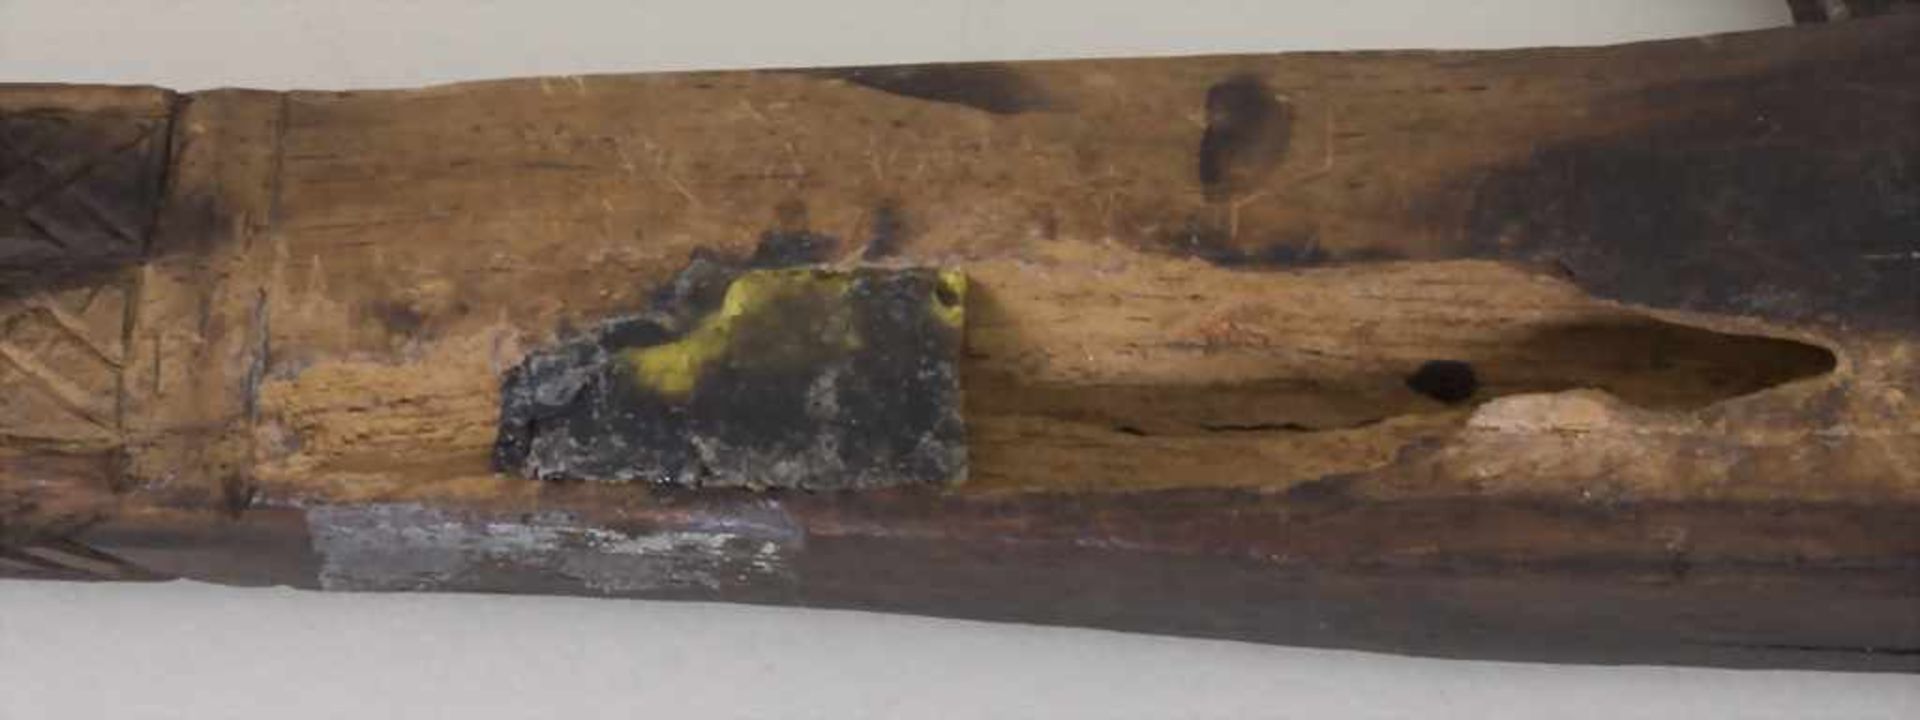 Axt mit Haken / An axe with hook, wohl NordafrikaMaterial: Holz, dunkel gebeizt, Eisen, Länge: 54 - Bild 2 aus 2